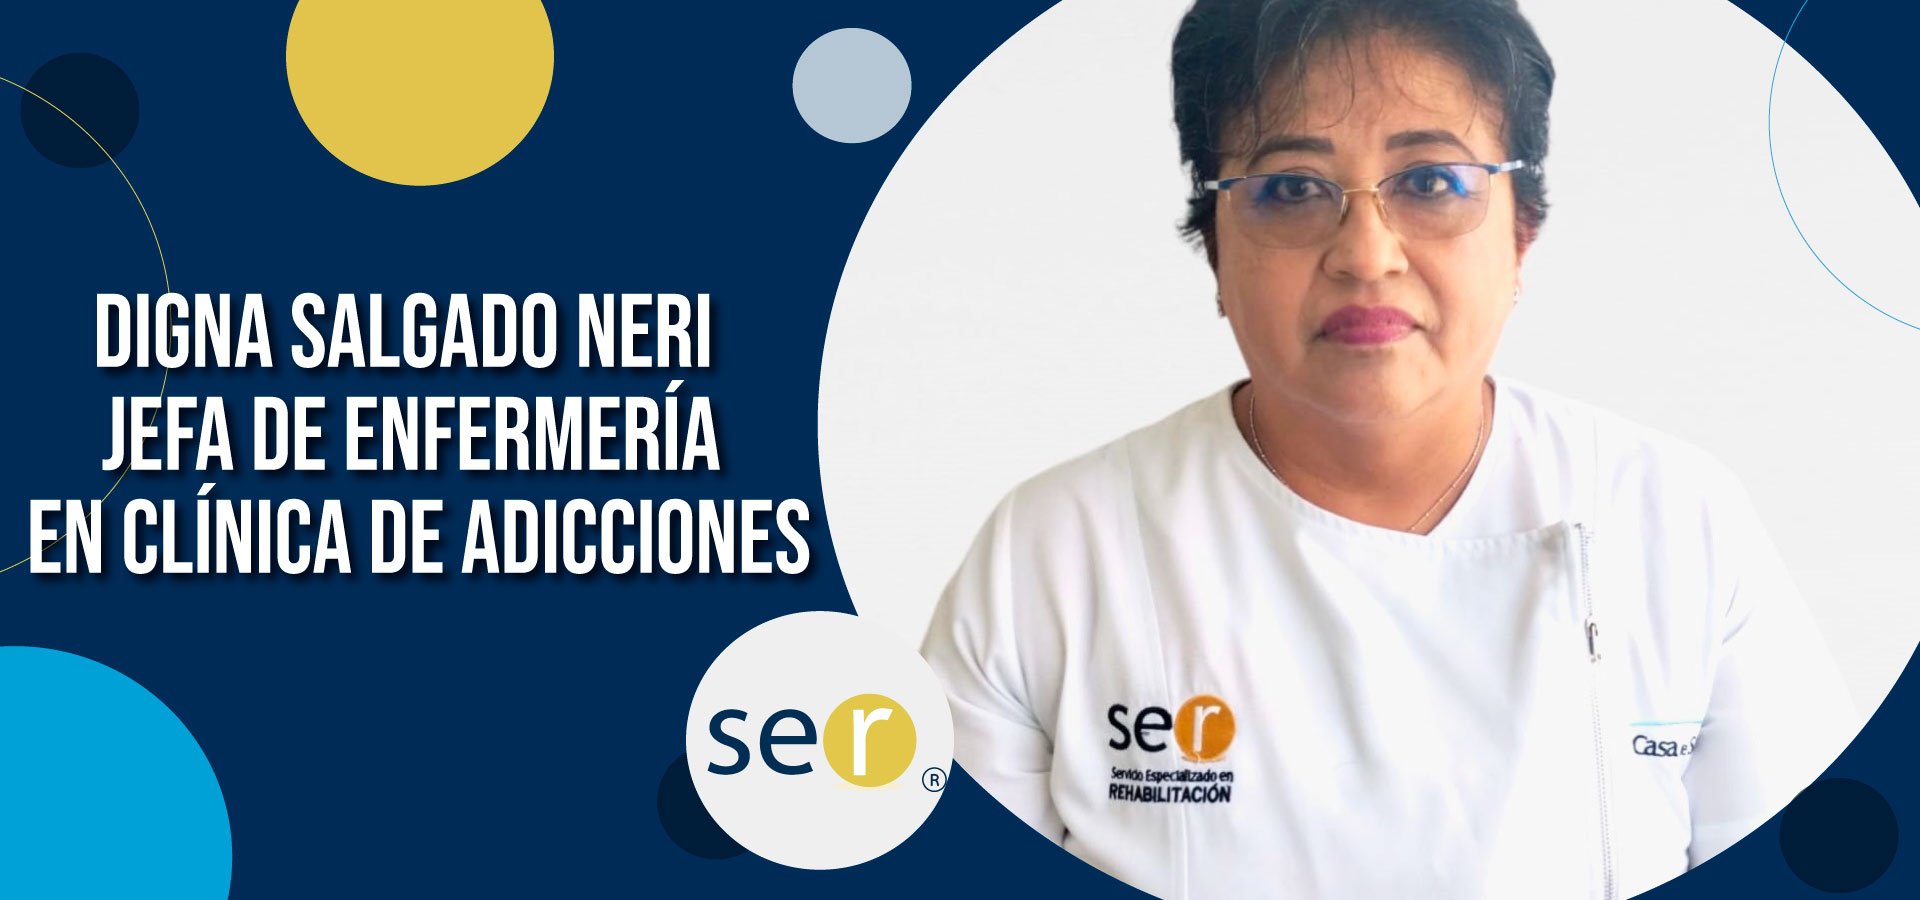 Clinica ser banner Digna Salgado Neri Jefa de enfermeria en clinica de adicciones - Clínica-SER